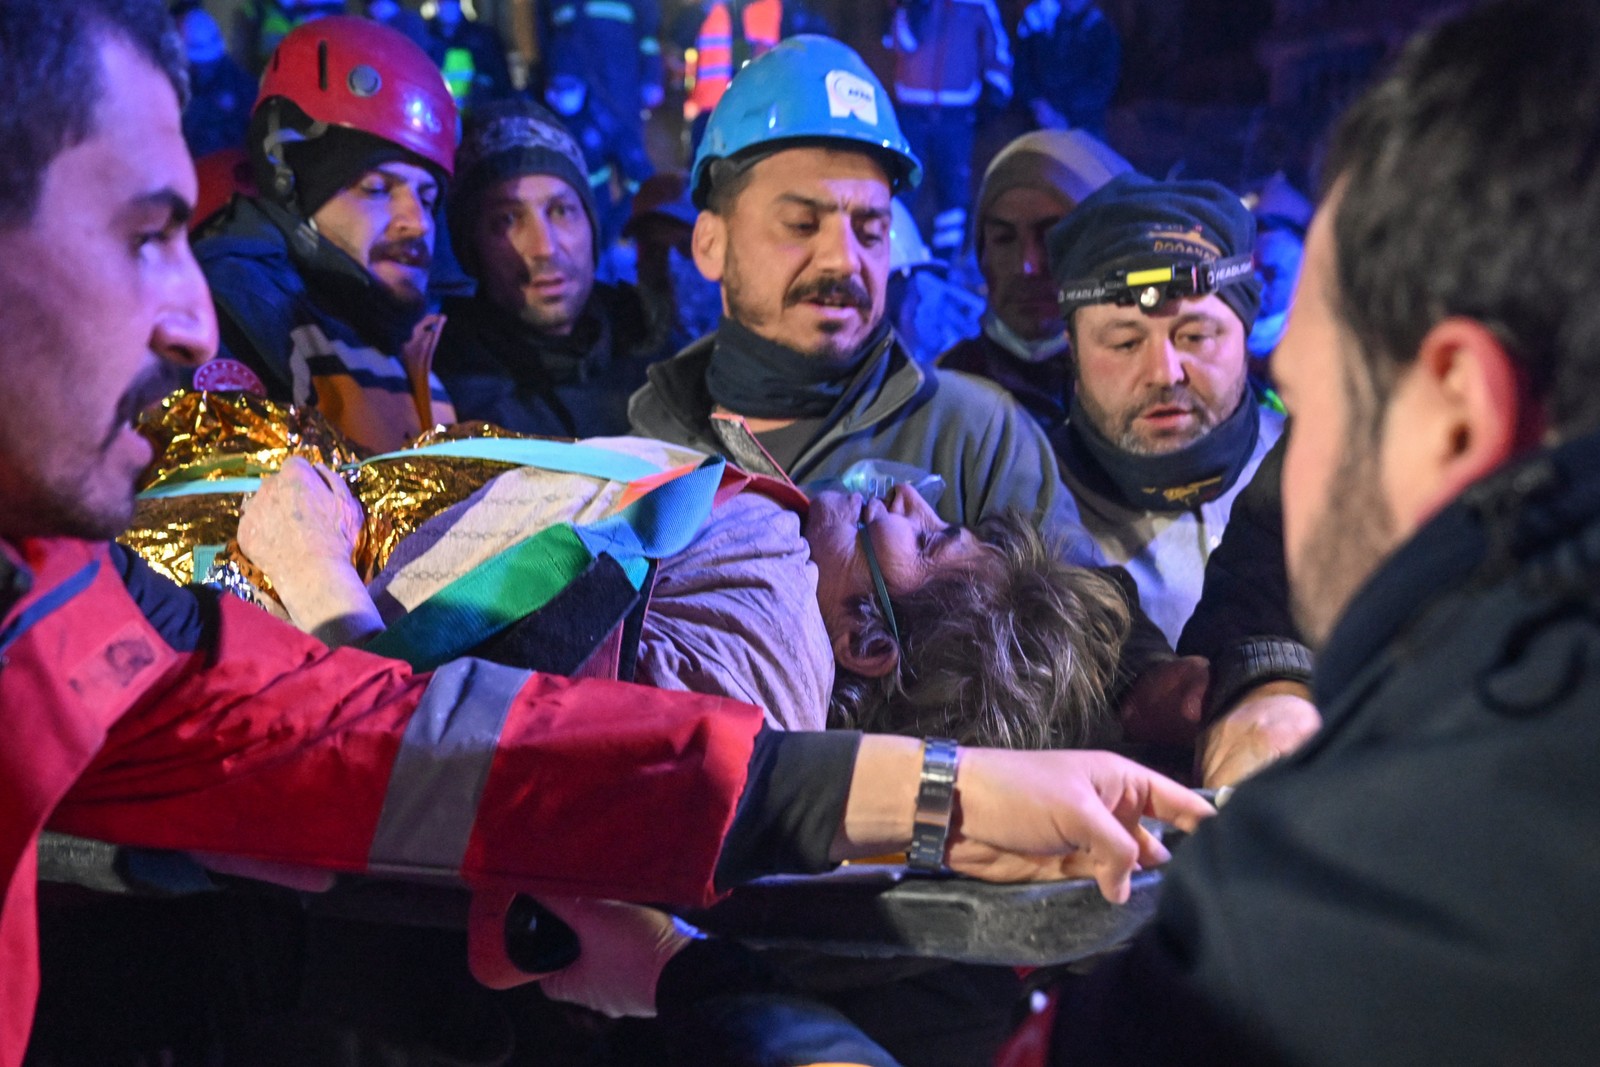 Fatma Gungor, 77, é resgatada com vida depois de mais de 210 horas sob os escombros — Foto: Agência Anadolu/Getty Images